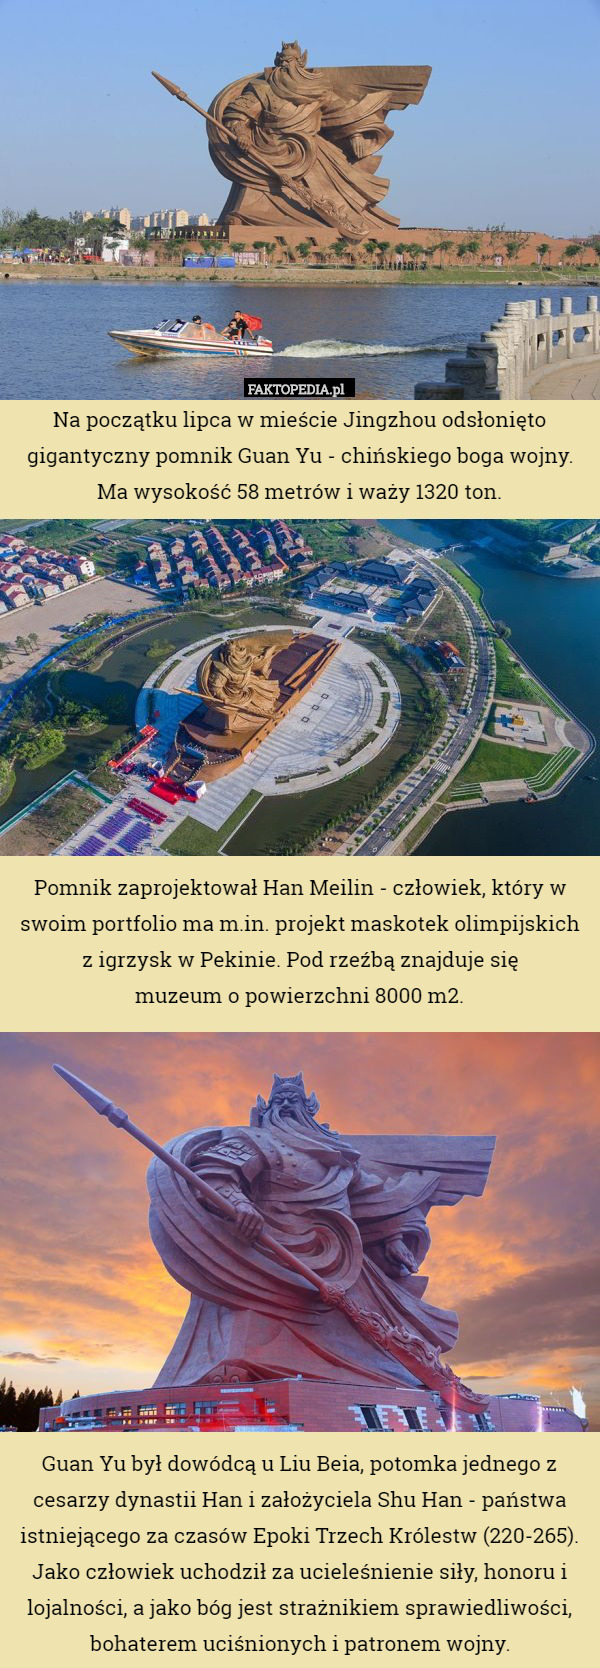 Na początku lipca w mieście Jingzhou odsłonięto gigantyczny pomnik Guan Yu - chińskiego boga wojny. Ma wysokość 58 metrów i waży 1320 ton.










Pomnik zaprojektował Han Meilin - człowiek, który w swoim portfolio ma m.in. projekt maskotek olimpijskich z igrzysk w Pekinie. Pod rzeźbą znajduje się
 muzeum o powierzchni 8000 m2.












Guan Yu był dowódcą u Liu Beia, potomka jednego z cesarzy dynastii Han i założyciela Shu Han - państwa istniejącego za czasów Epoki Trzech Królestw (220-265). Jako człowiek uchodził za ucieleśnienie siły, honoru i lojalności, a jako bóg jest strażnikiem sprawiedliwości, bohaterem uciśnionych i patronem wojny. 